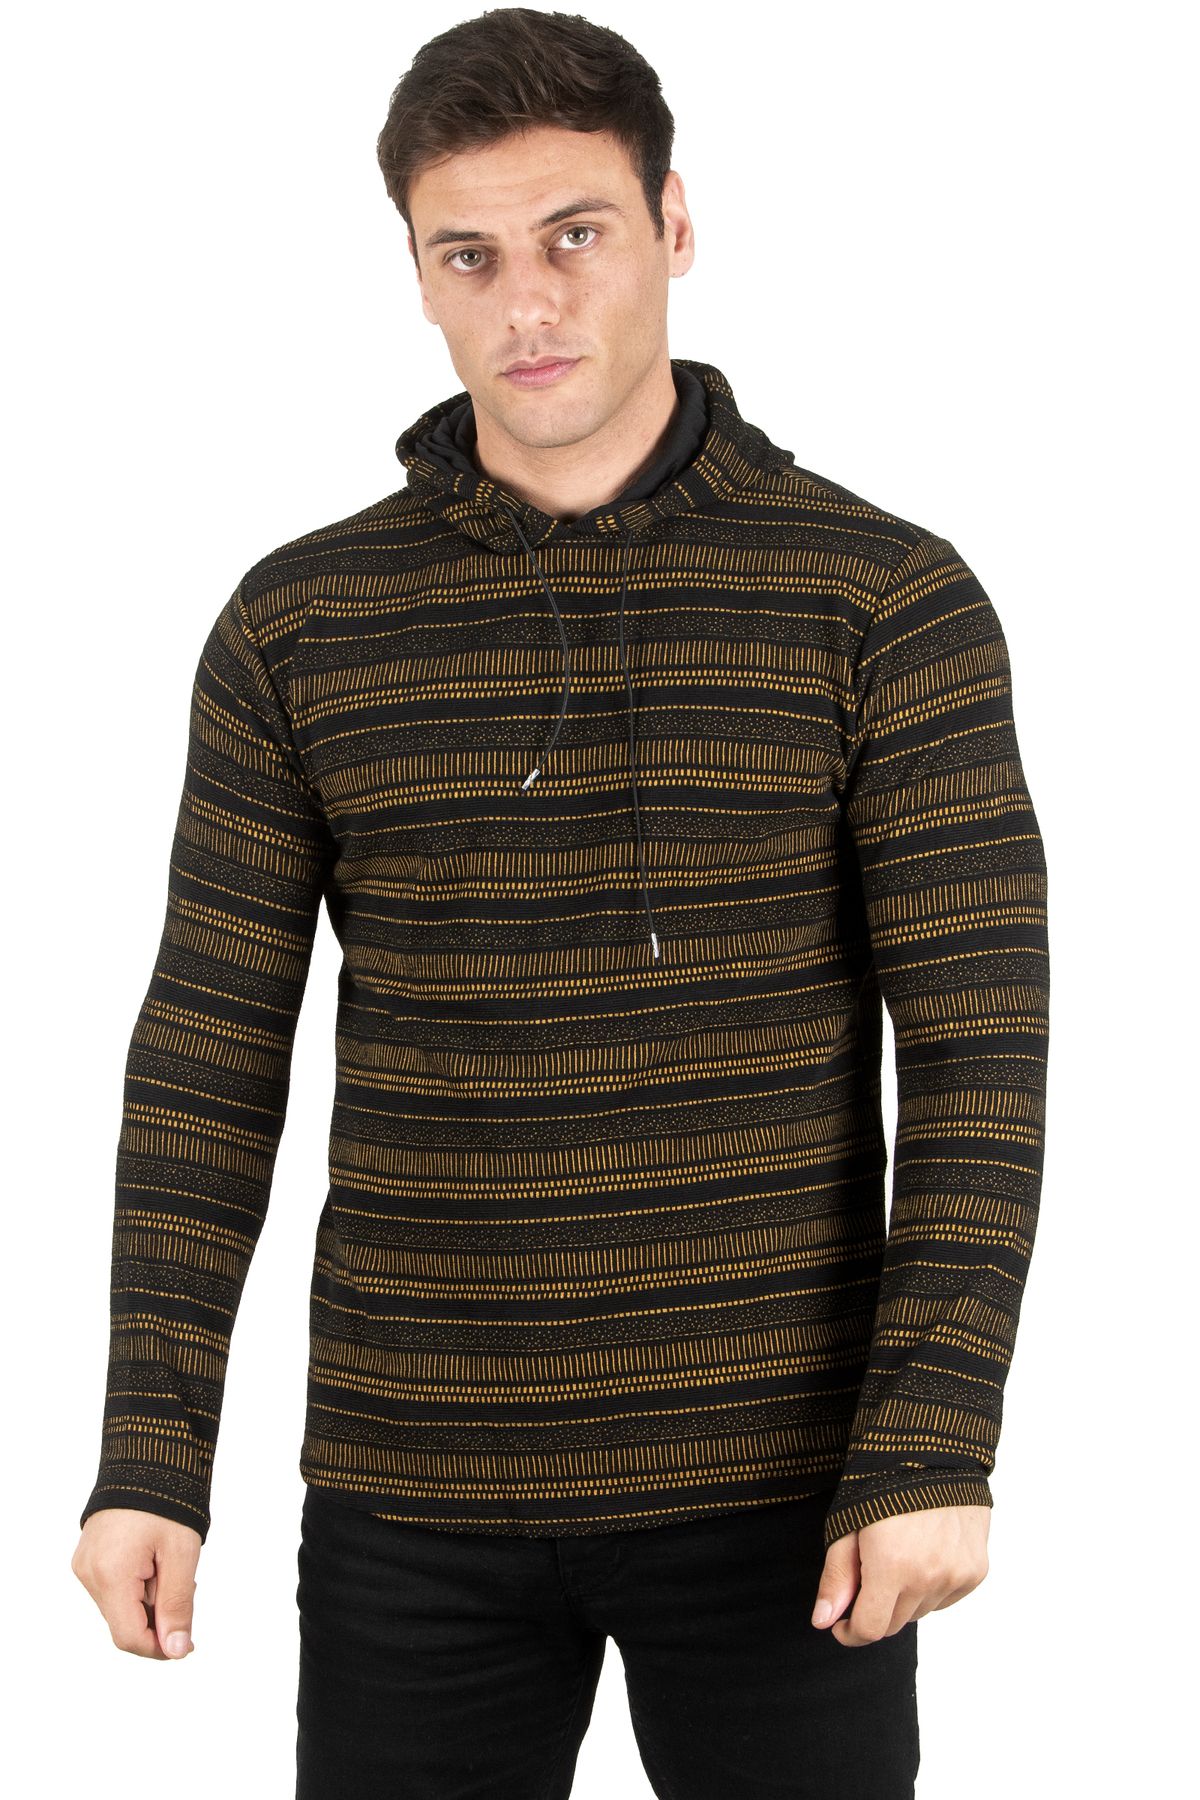 DeepSea Erkek Hardal Sarısı Çizgili Desenli Likralı Kapşonlu Sweatshirt 2300399